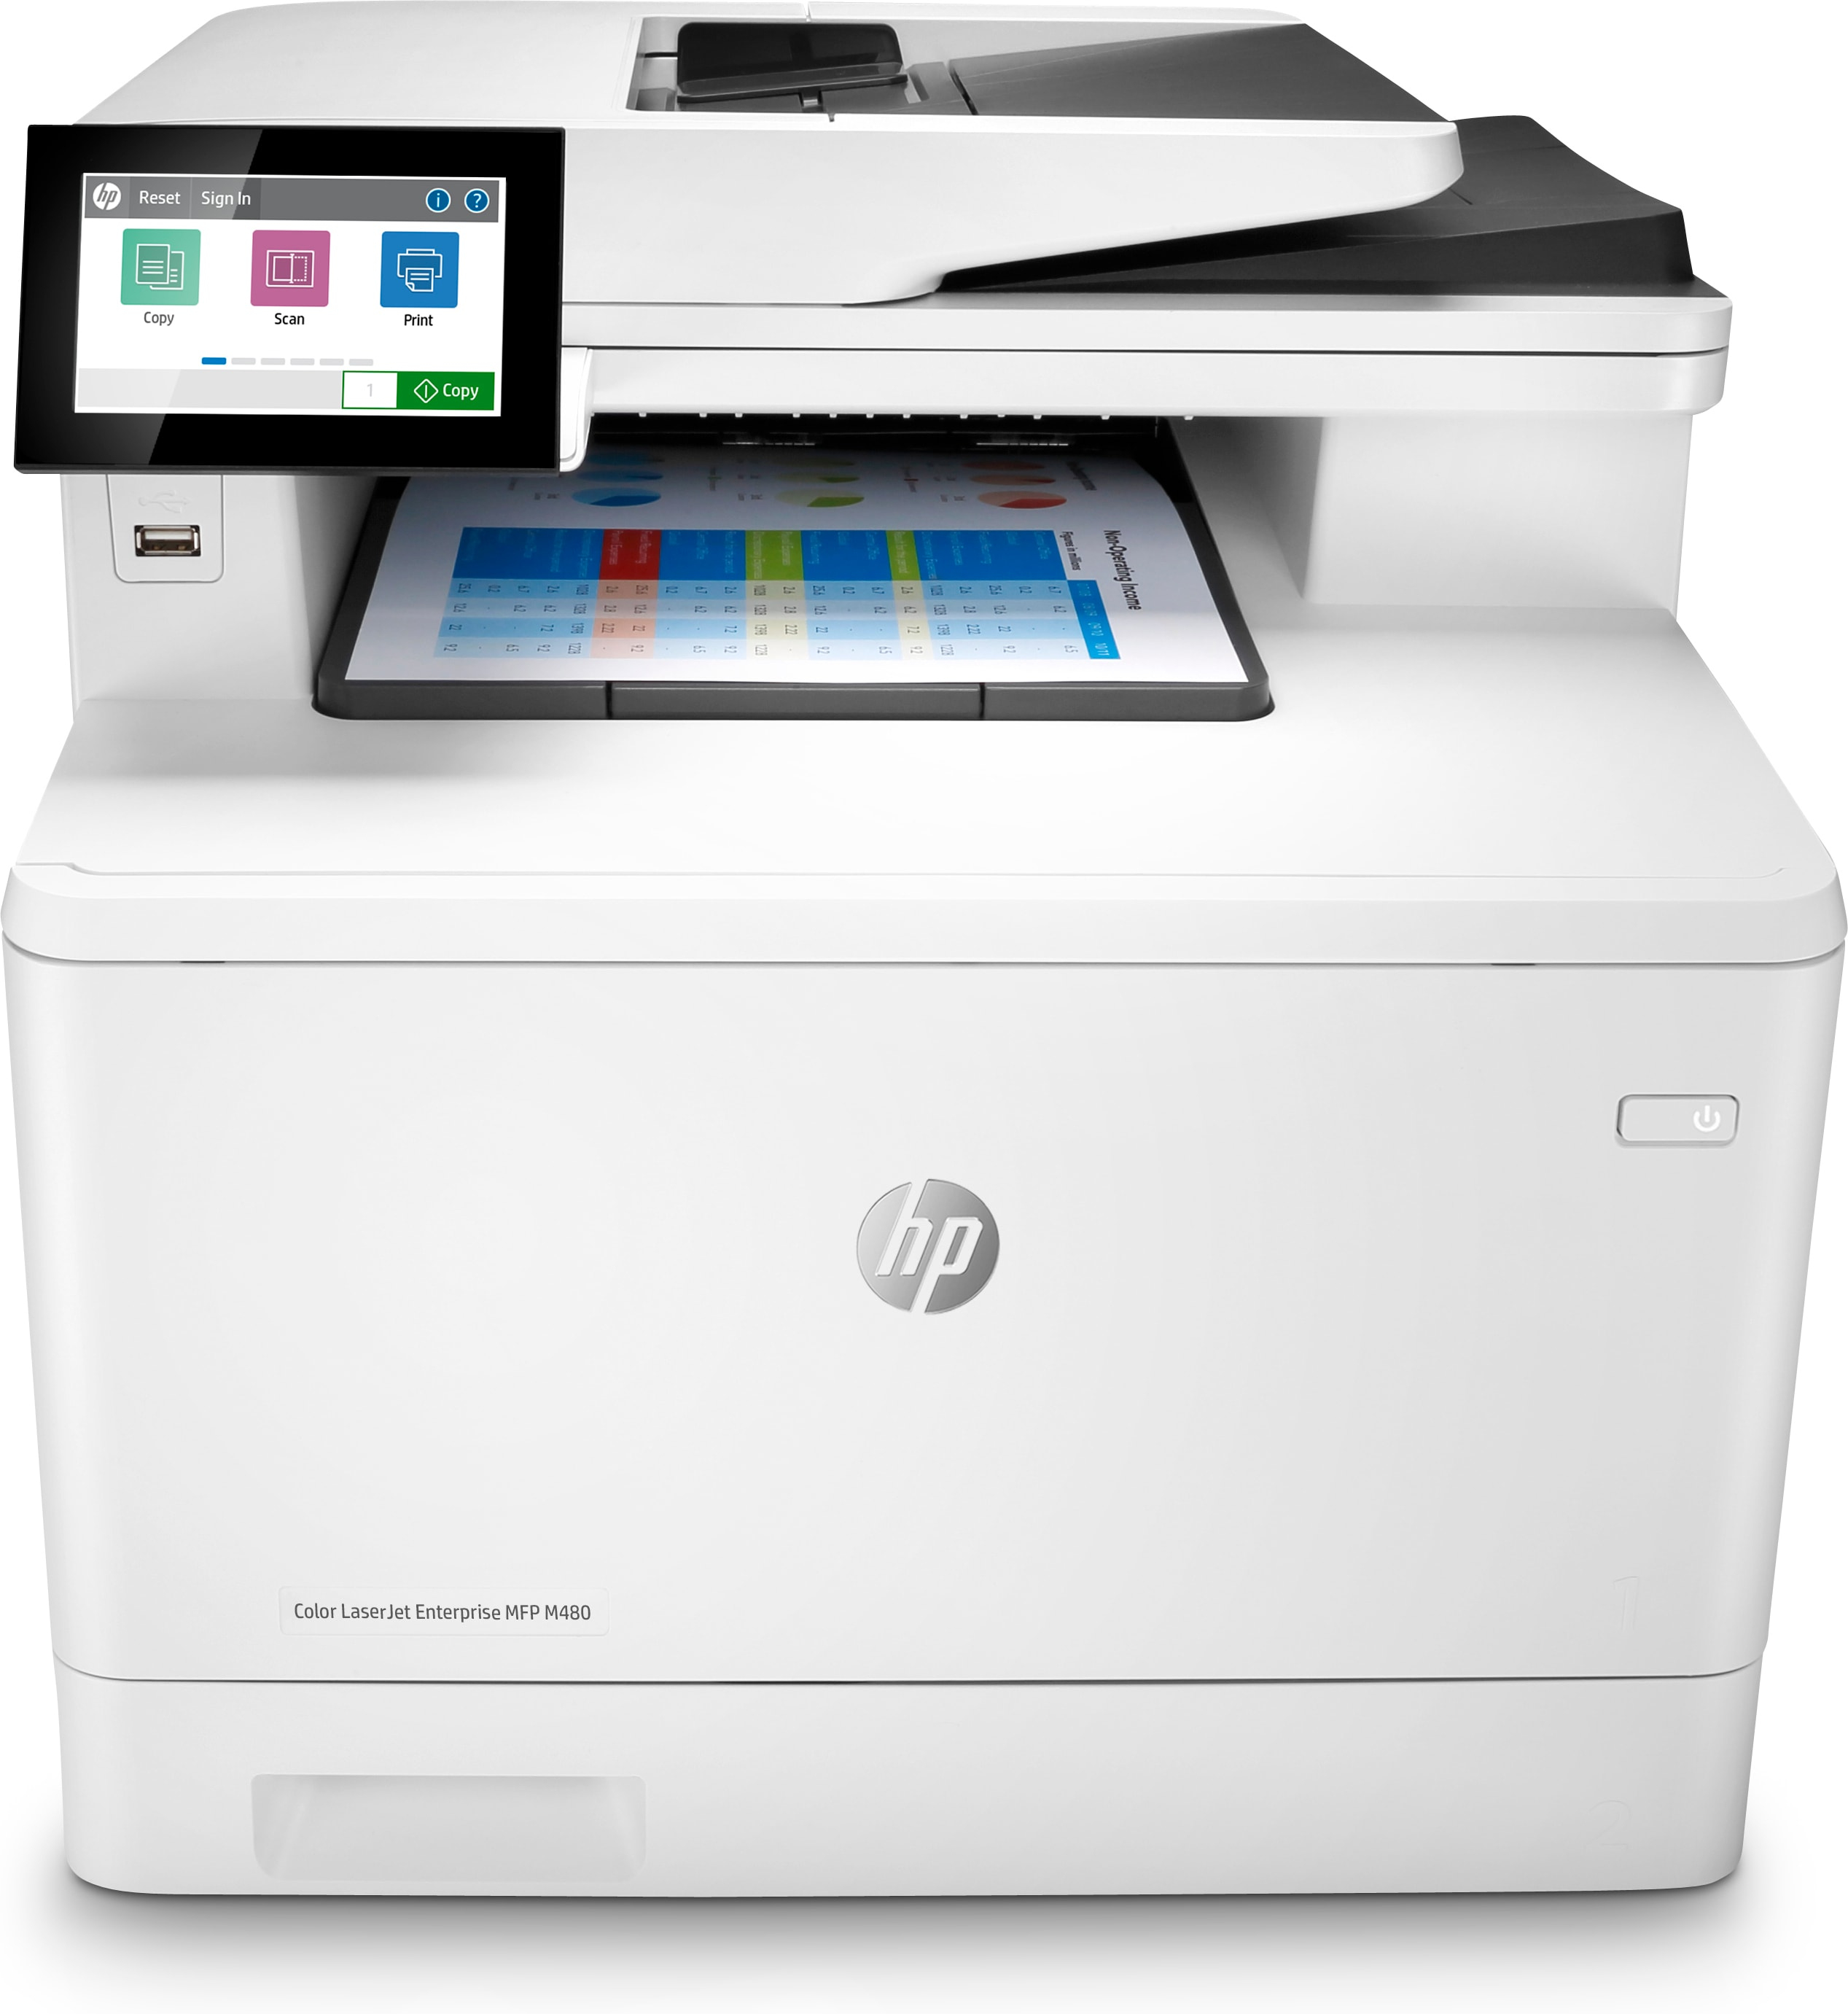 HP Color LaserJet Enterprise MFP M480f, Färg, Skrivare för Företag, Skriv ut, kopiera, skanna, fax, Kompakt storlek; Hög säkerhet; Dubbelsidig utskrift; ADF för 50 ark; Energieffektiv